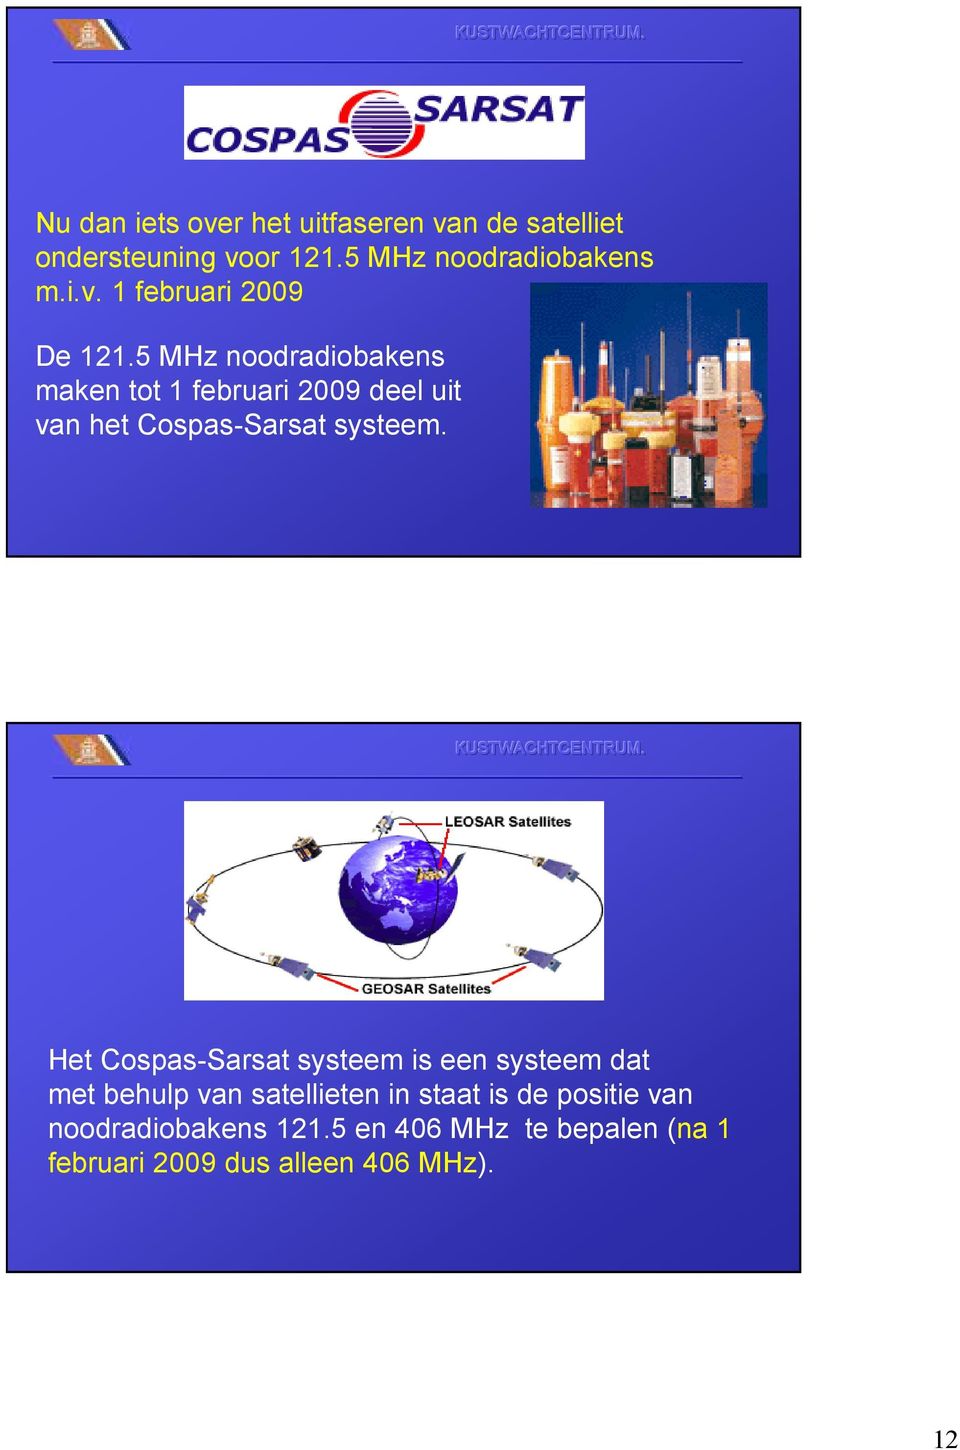 Het Cospas-Sarsat systeem is een systeem dat met behulp van satellieten in staat is de positie van